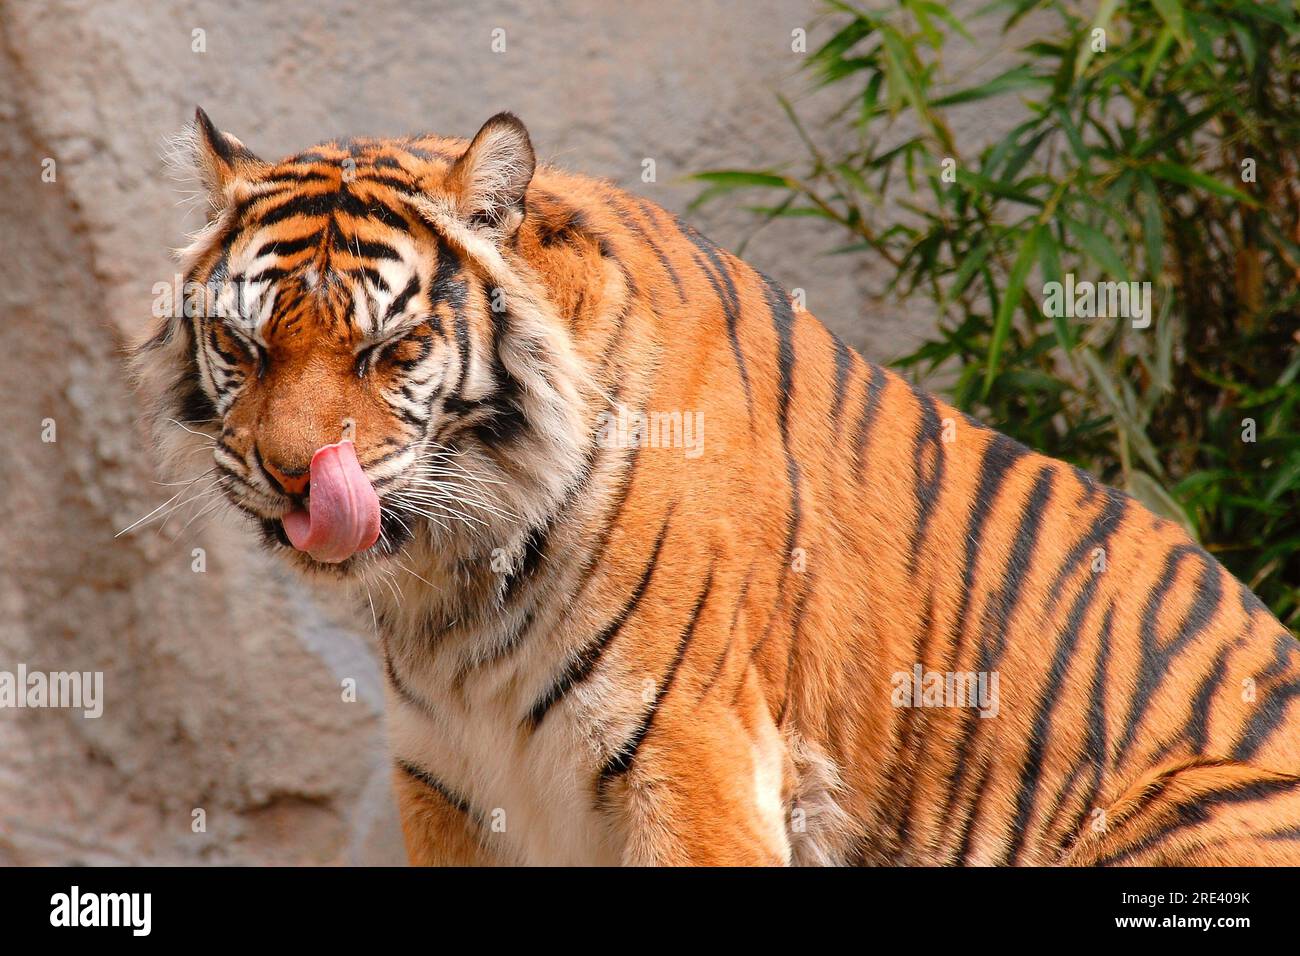 Le tigre de Sumatra (Panthera tigris sumatrae) est une sous-espèce de tigre originaire de l'île indonésienne de Sumatra. Comme tous les tigres, ils ont une apparence majestueuse et puissante. Voici quelques caractéristiques du beau visage d'un tigre de Sumatra: Banque D'Images